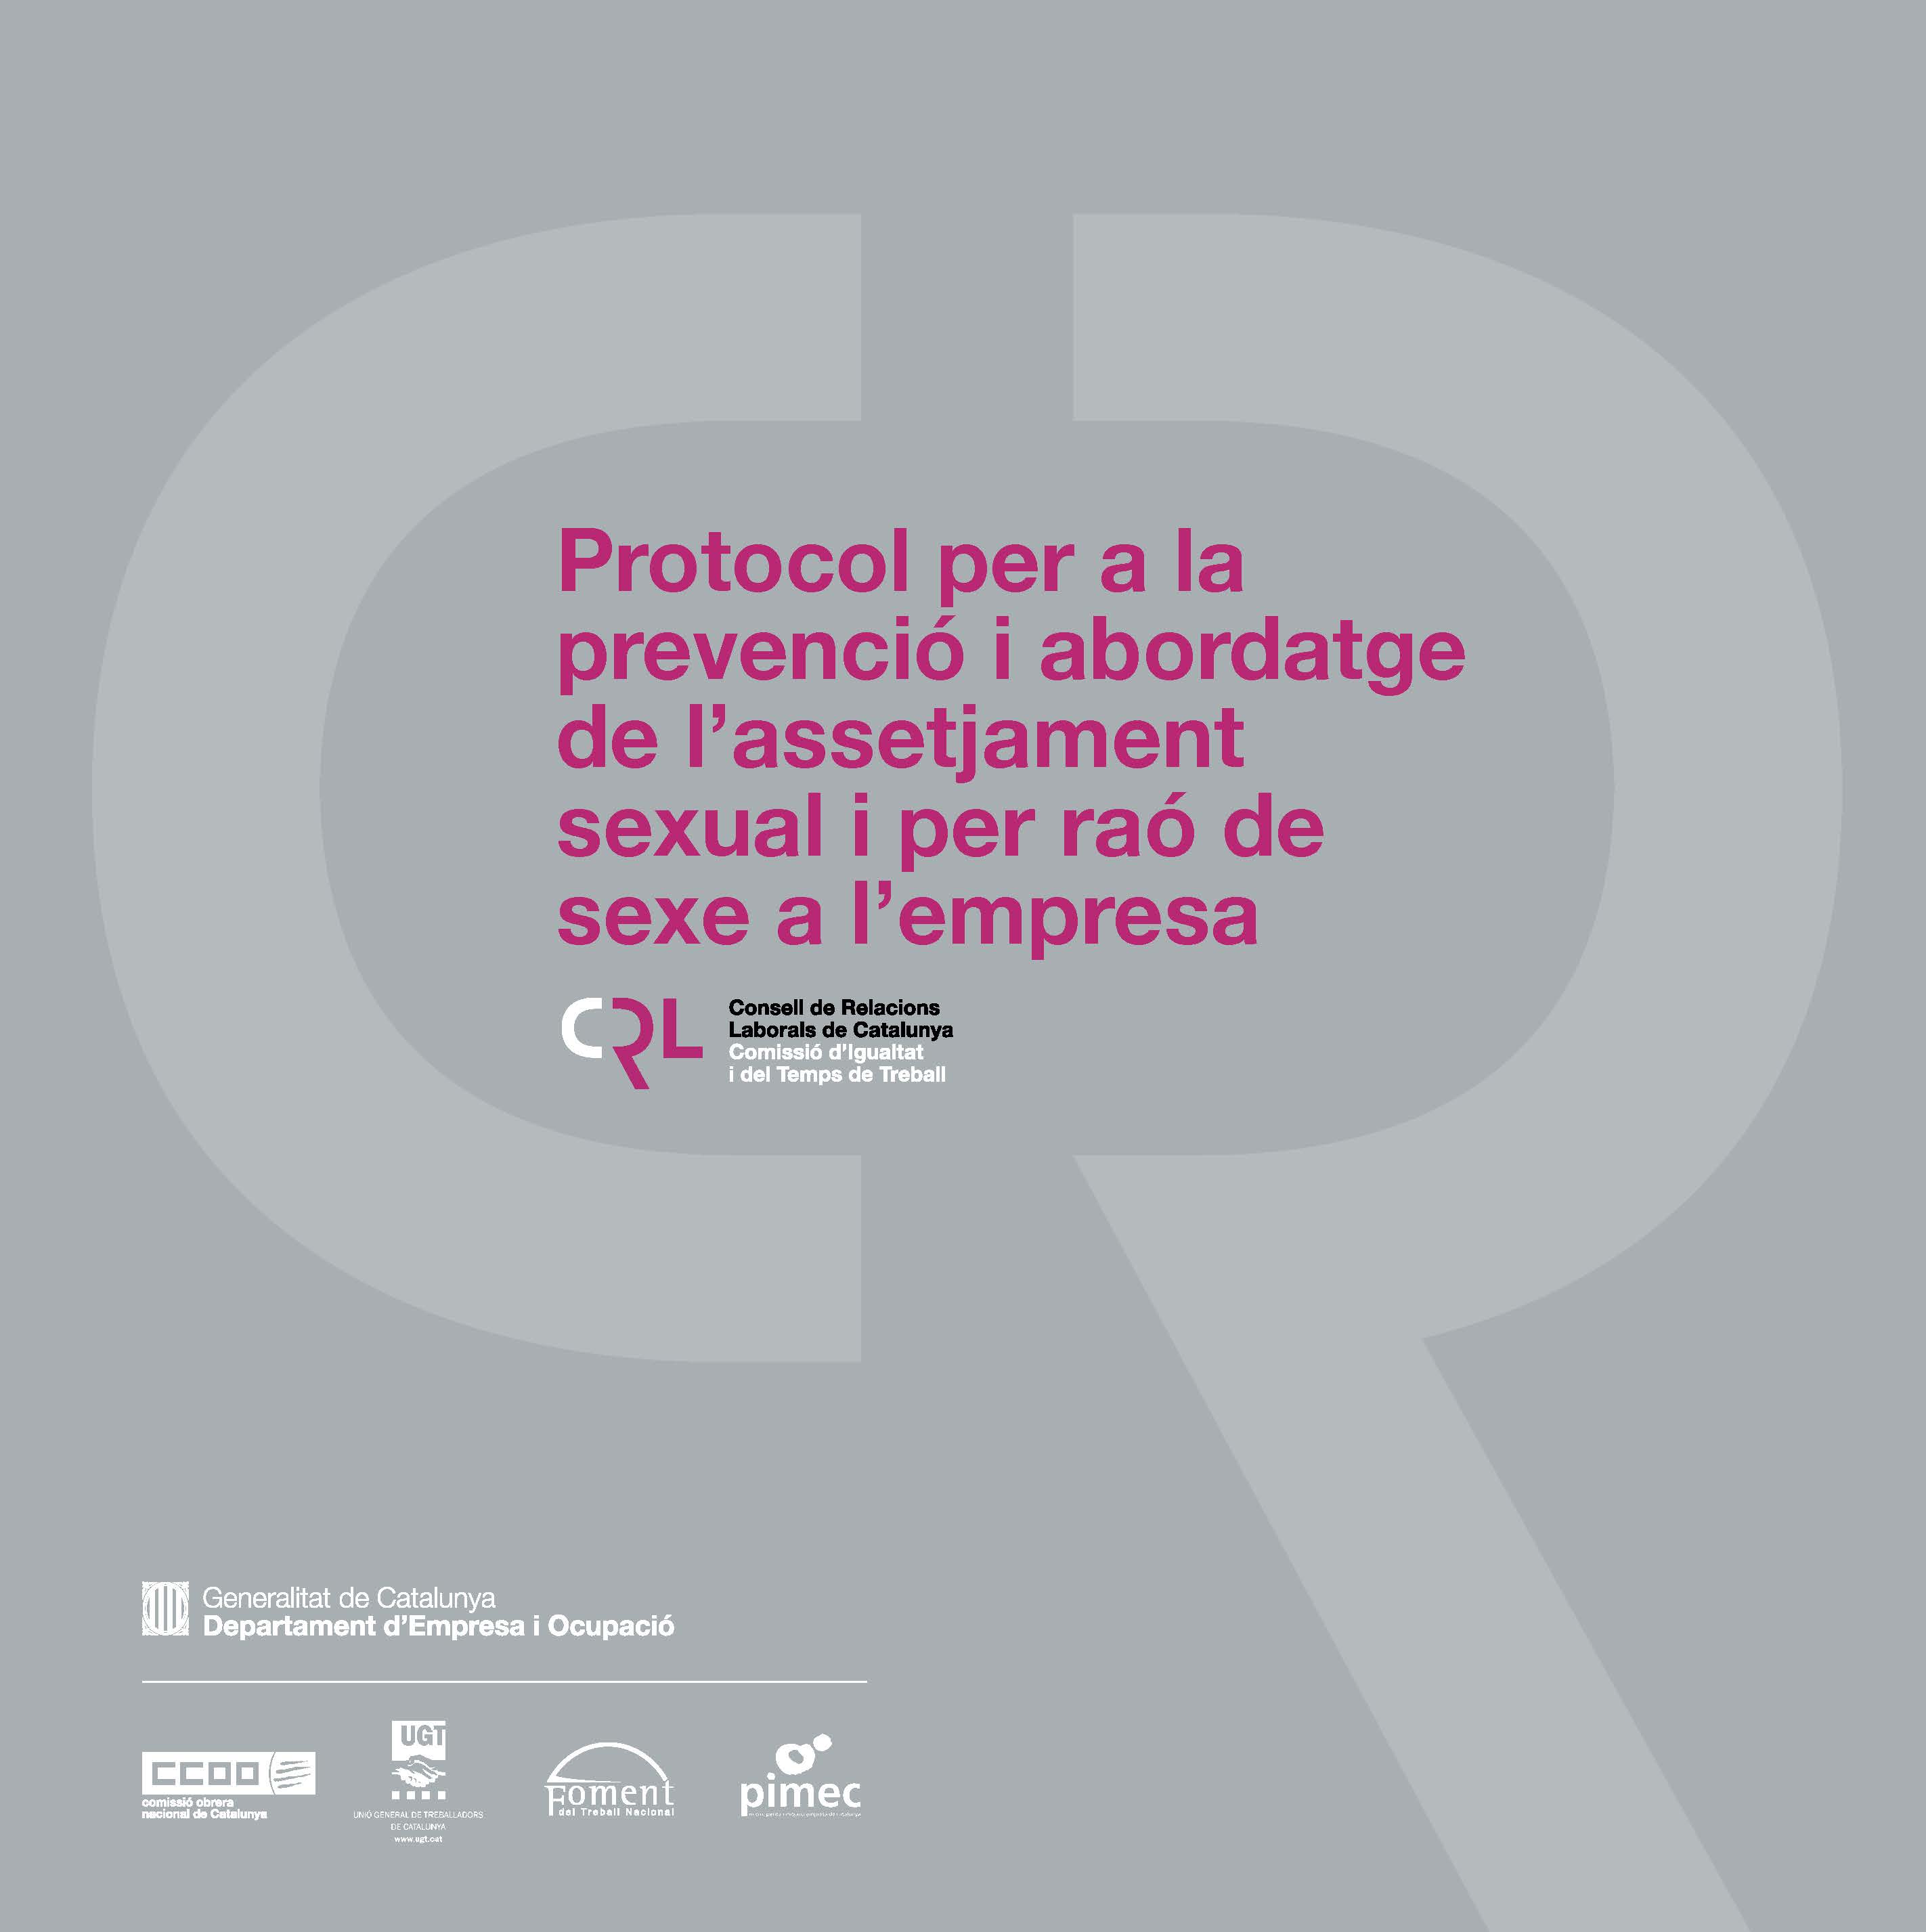 Protocol Per A La Prevenció I Abordatge De La Prevenció De L Assetjament Sexual I Per Raó De